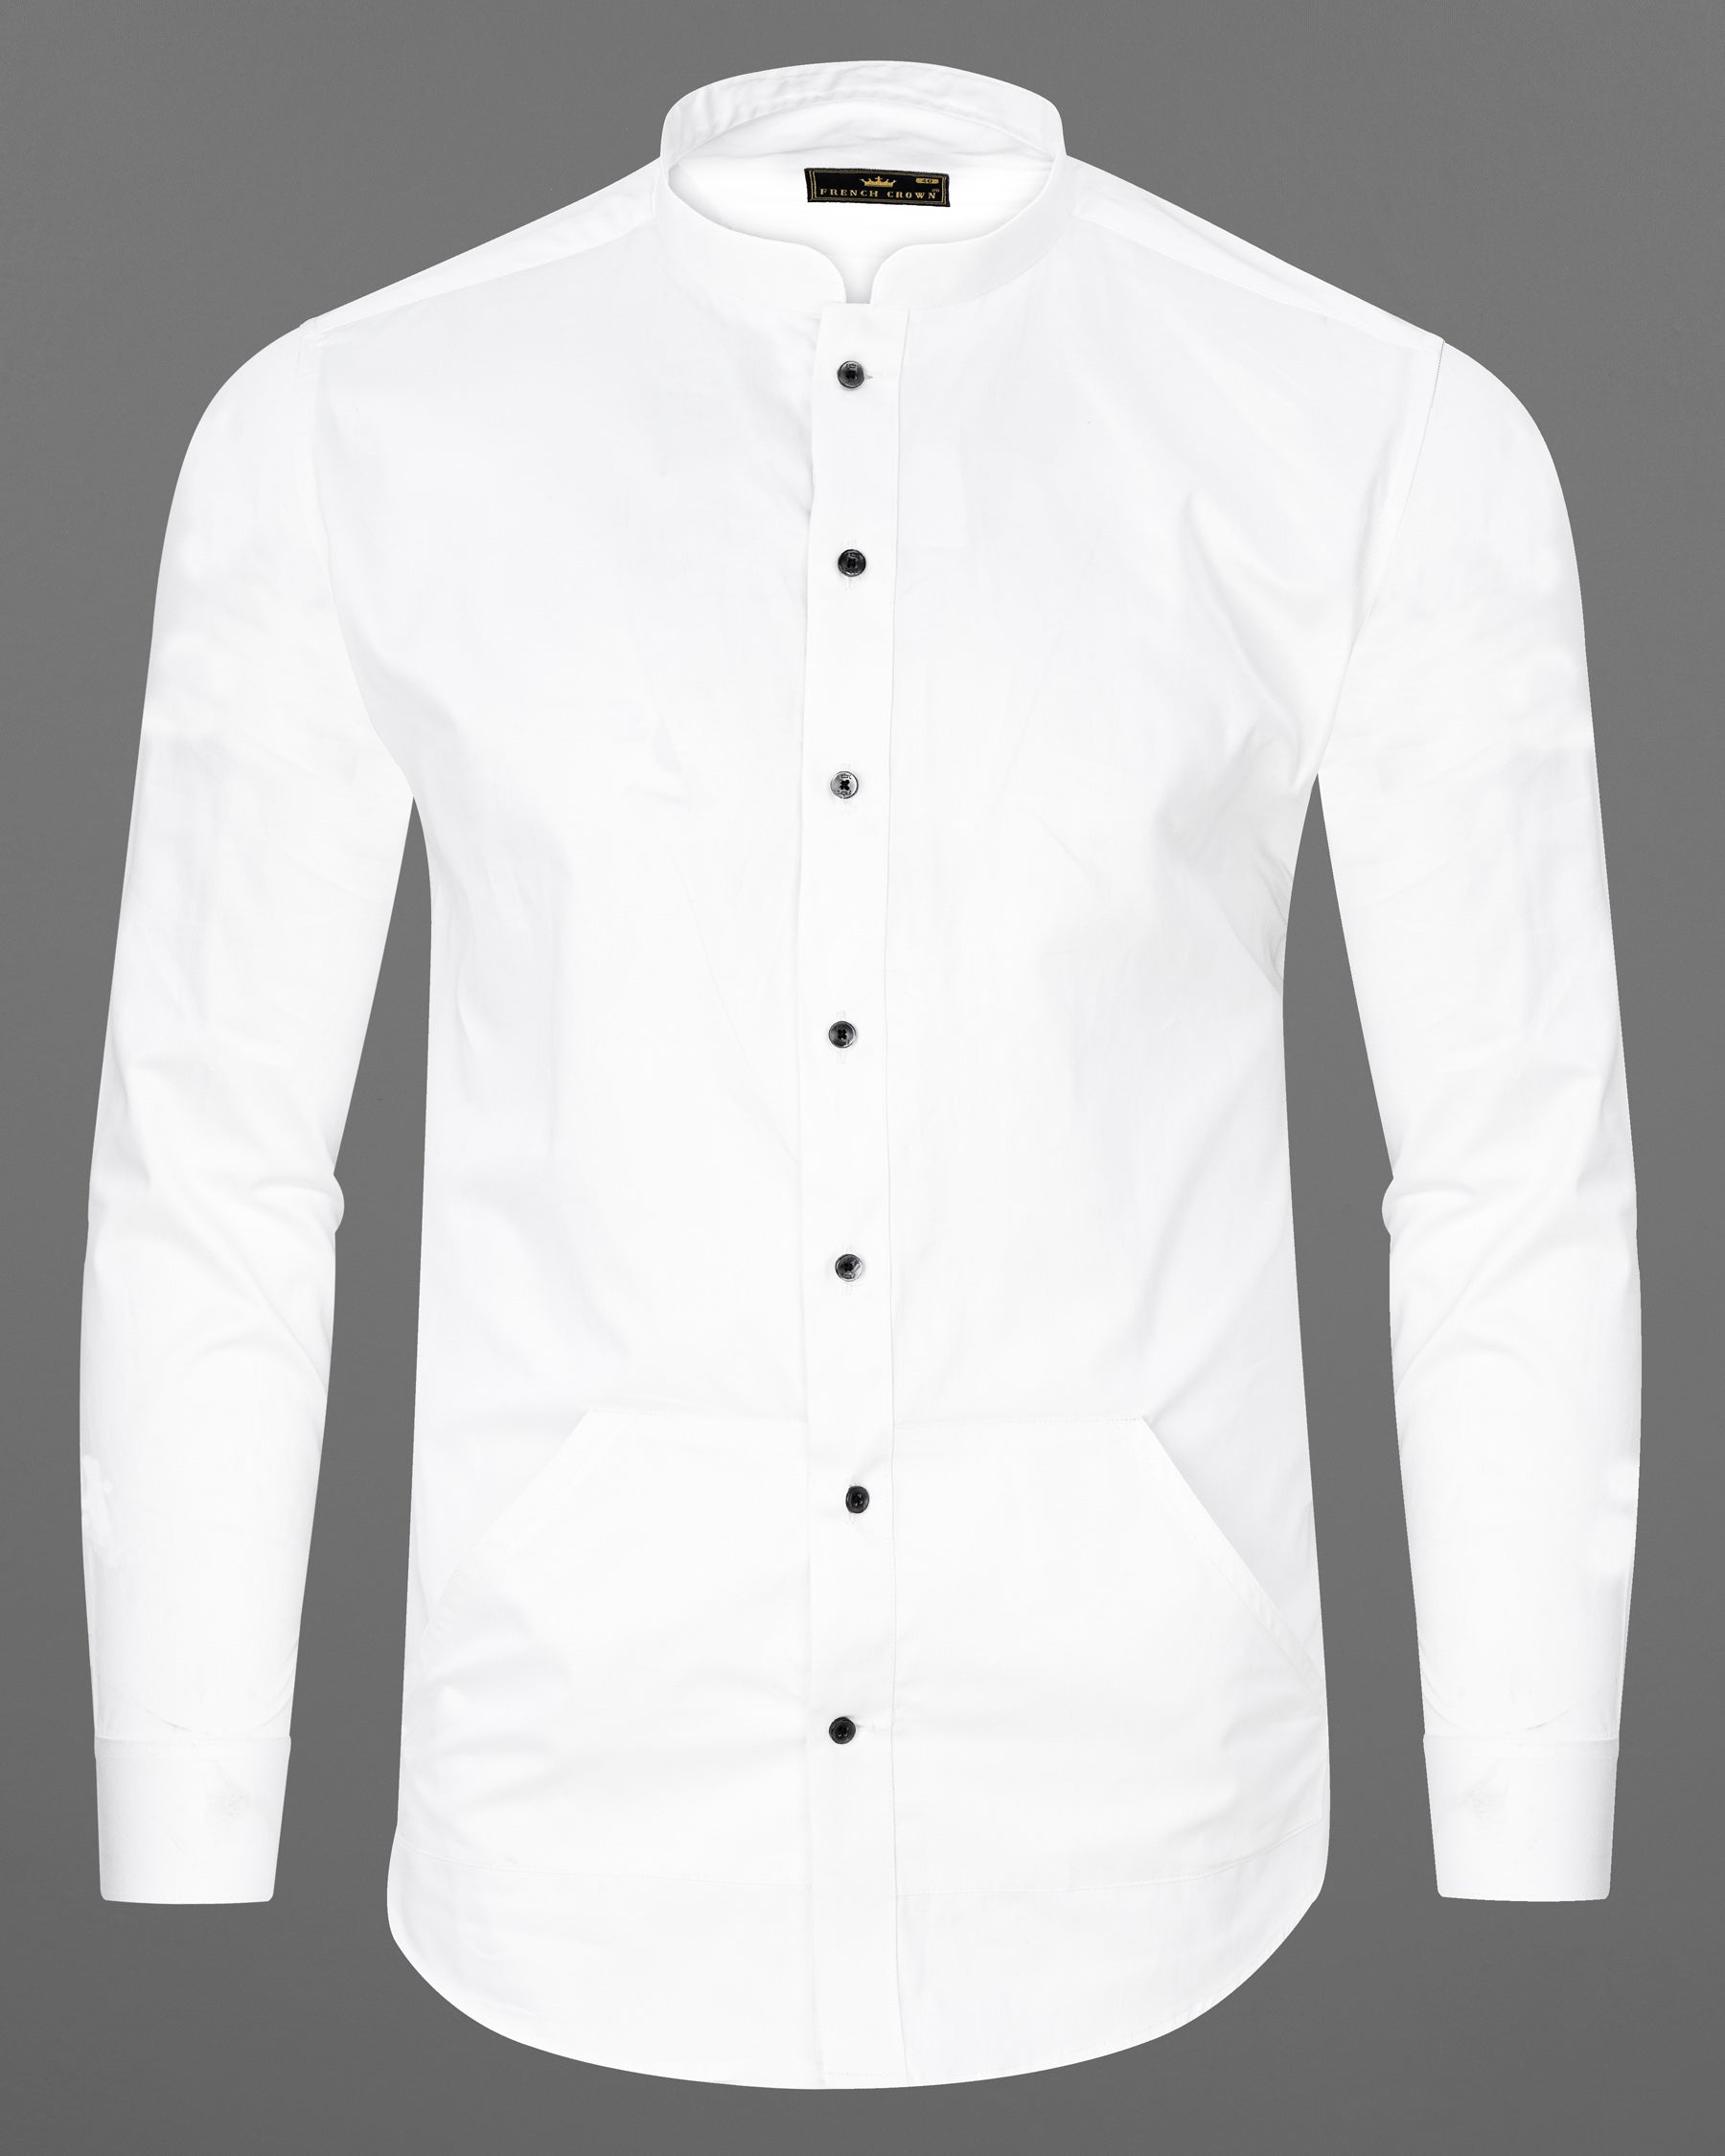 Mandarin Collar Shirts - Buy Mandarin Collar Shirt